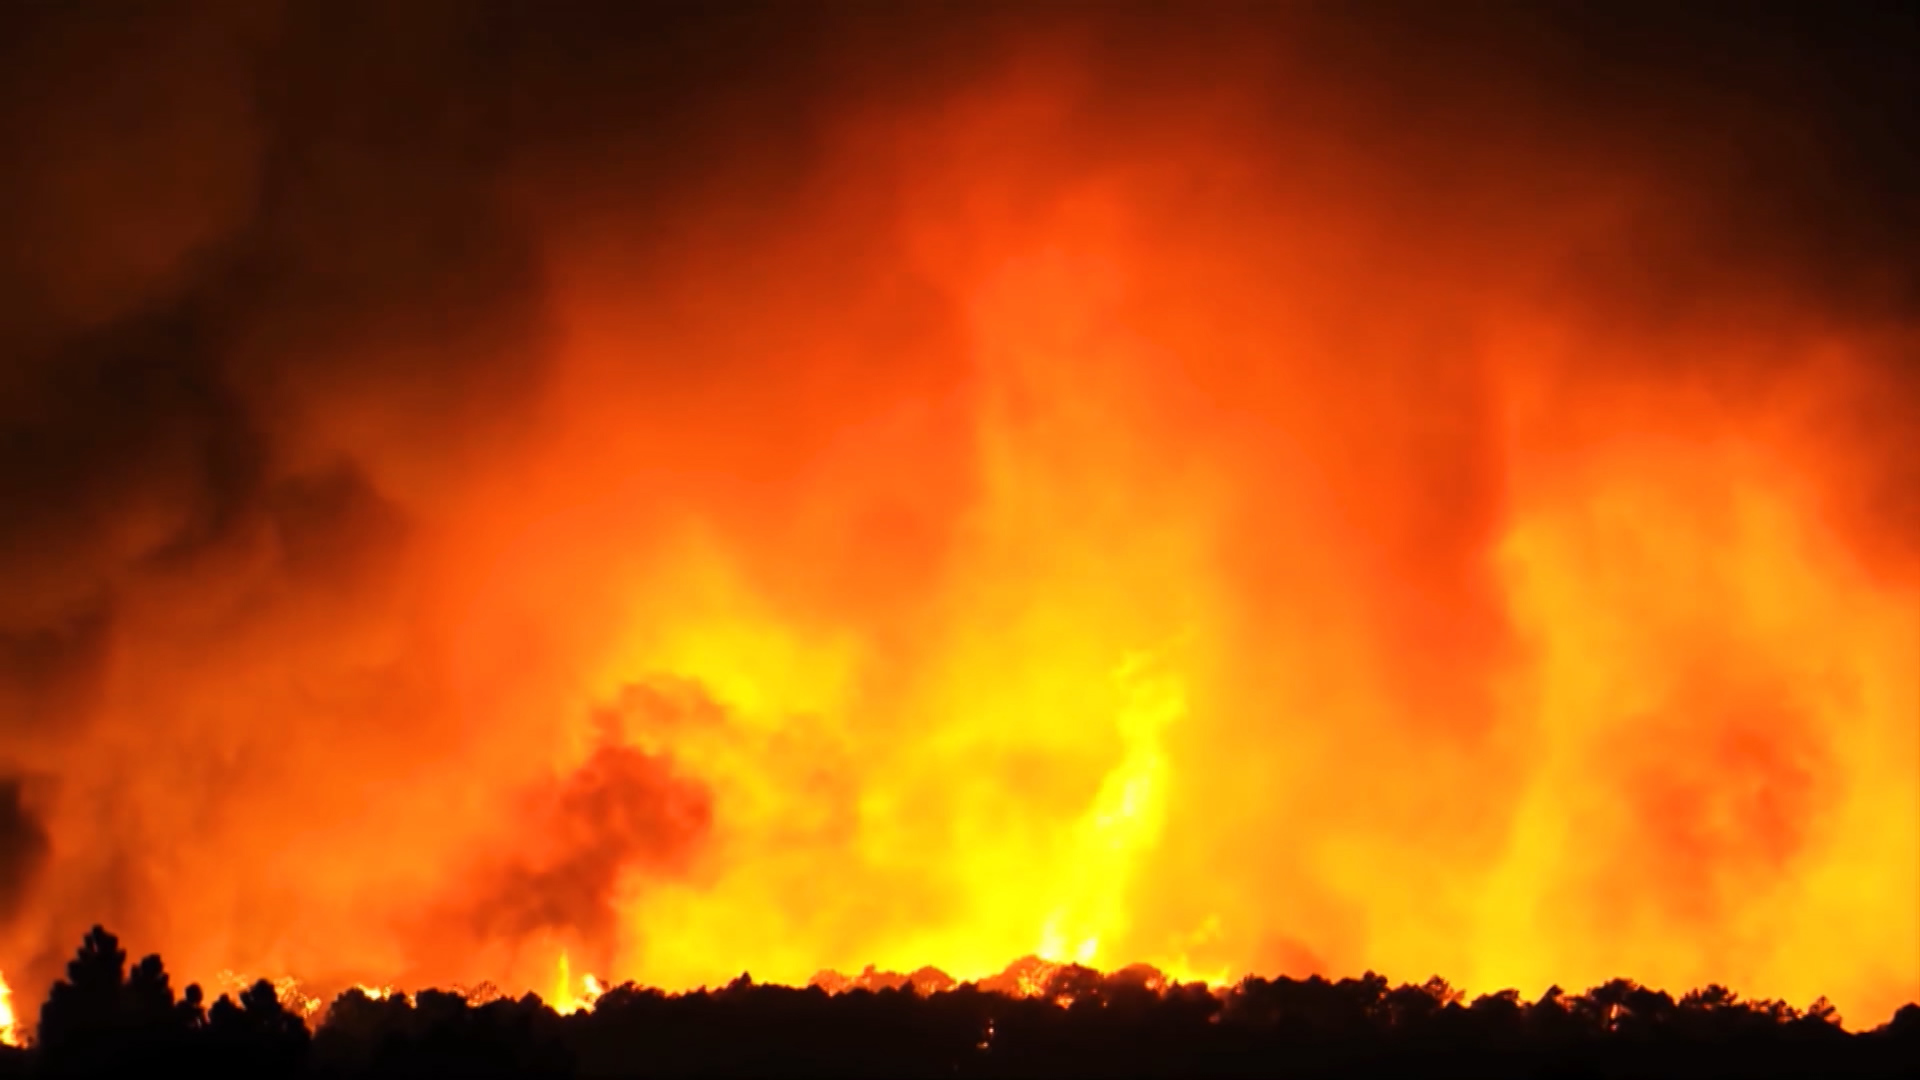 Los incendios forestales producen pérdida de biodiversidad por la muerte en masa de animales y de árboles, entre otras especies